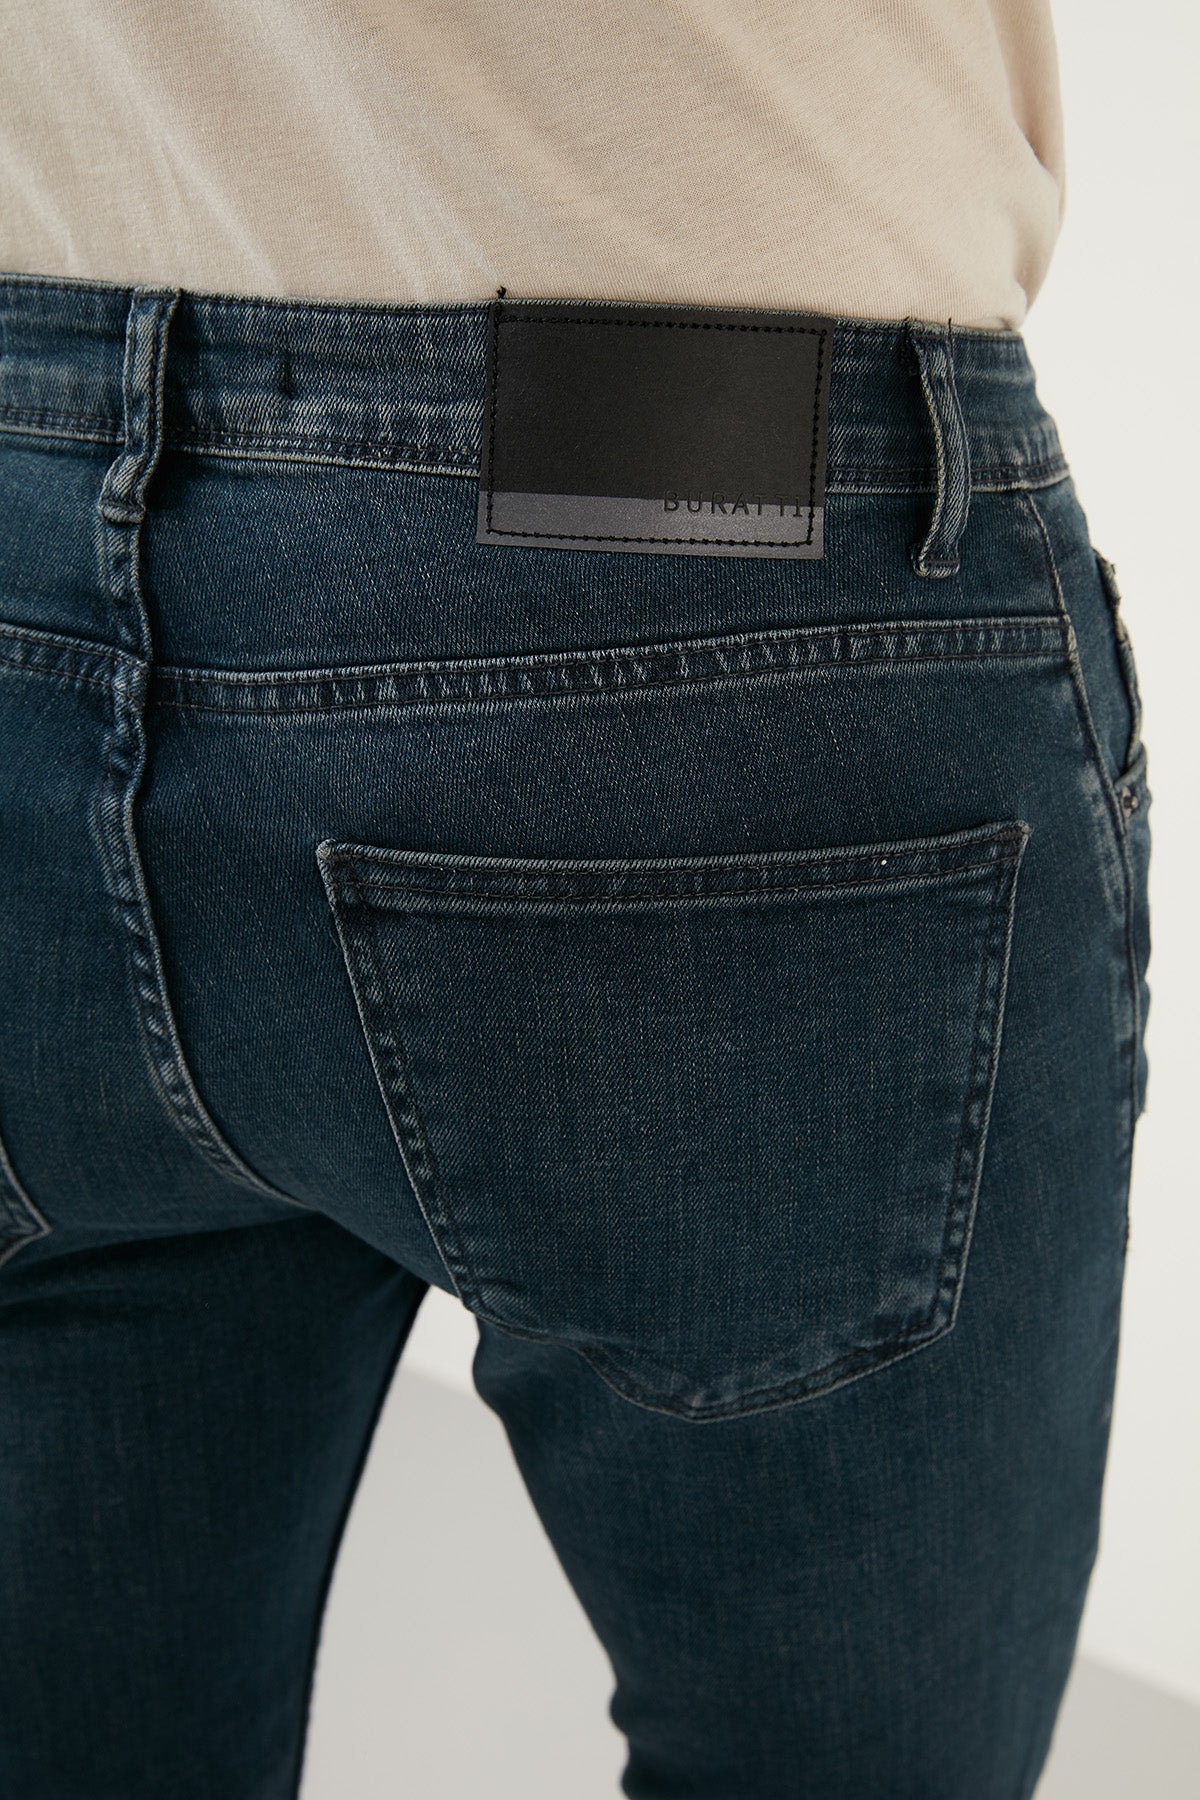 Buratti Pamuklu Normal Bel Slim Fit Dar Paça Jeans Erkek Kot Pantolon 1000F09NAPOLI MAVİ